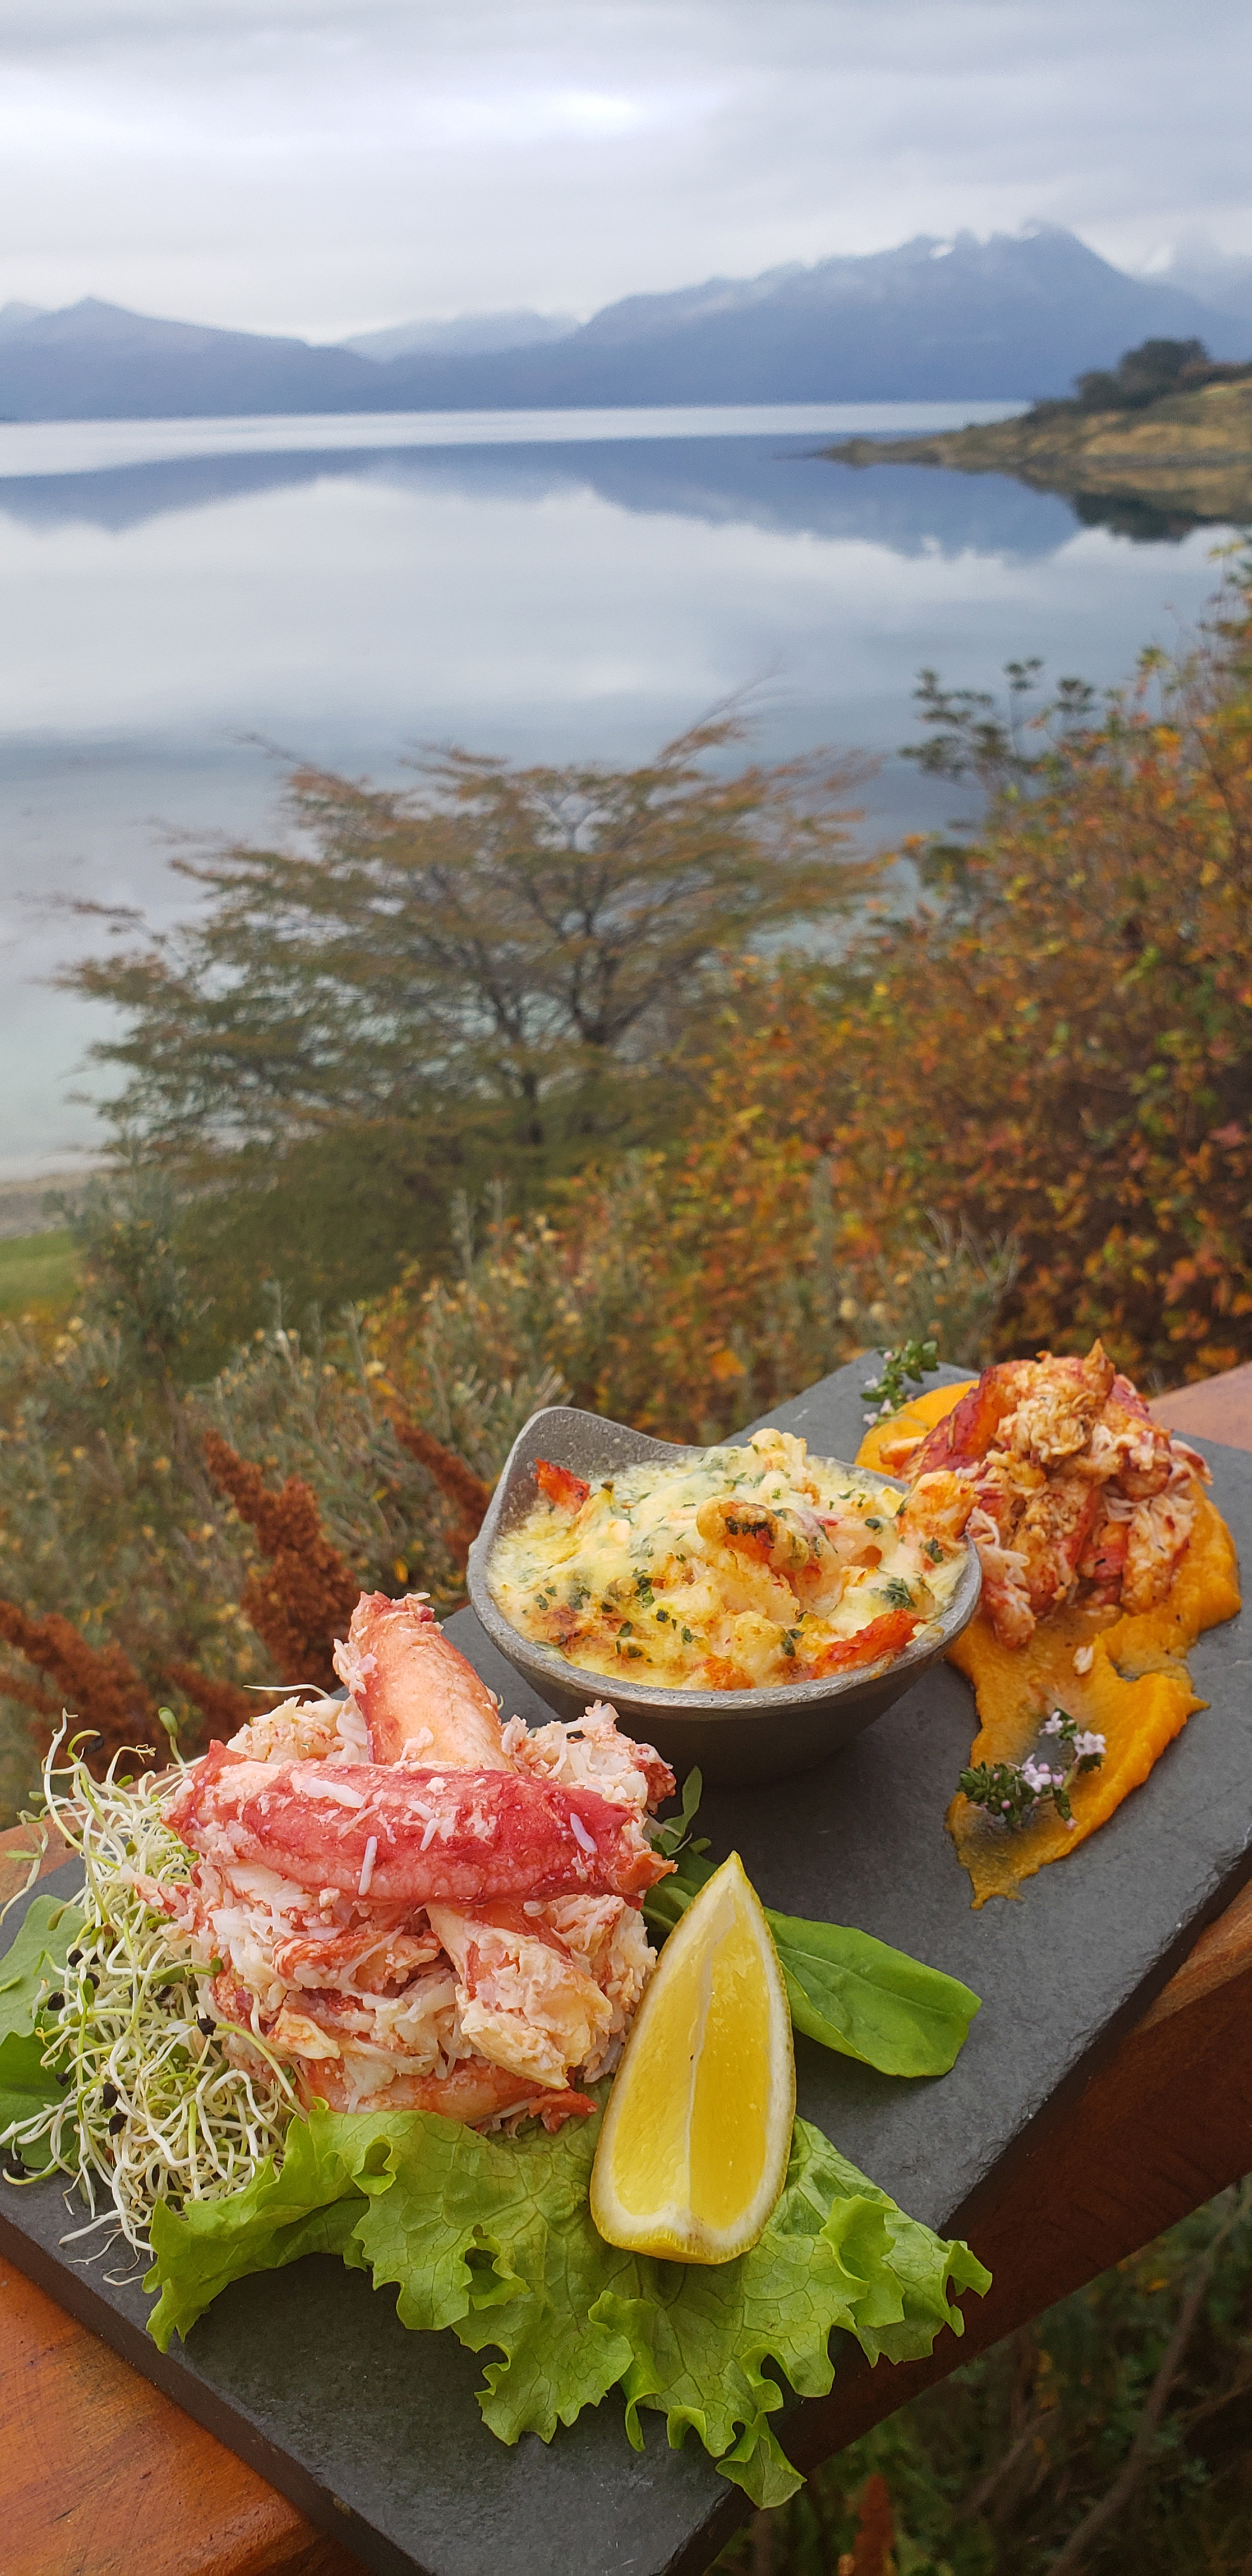 Repetir el sabor de un viaje a Ushuaia es posible con esta receta del Restaurant Reinamora en Los Cauquenes Resort & Spa que se puede preparar fácilmente en la cocina de casa